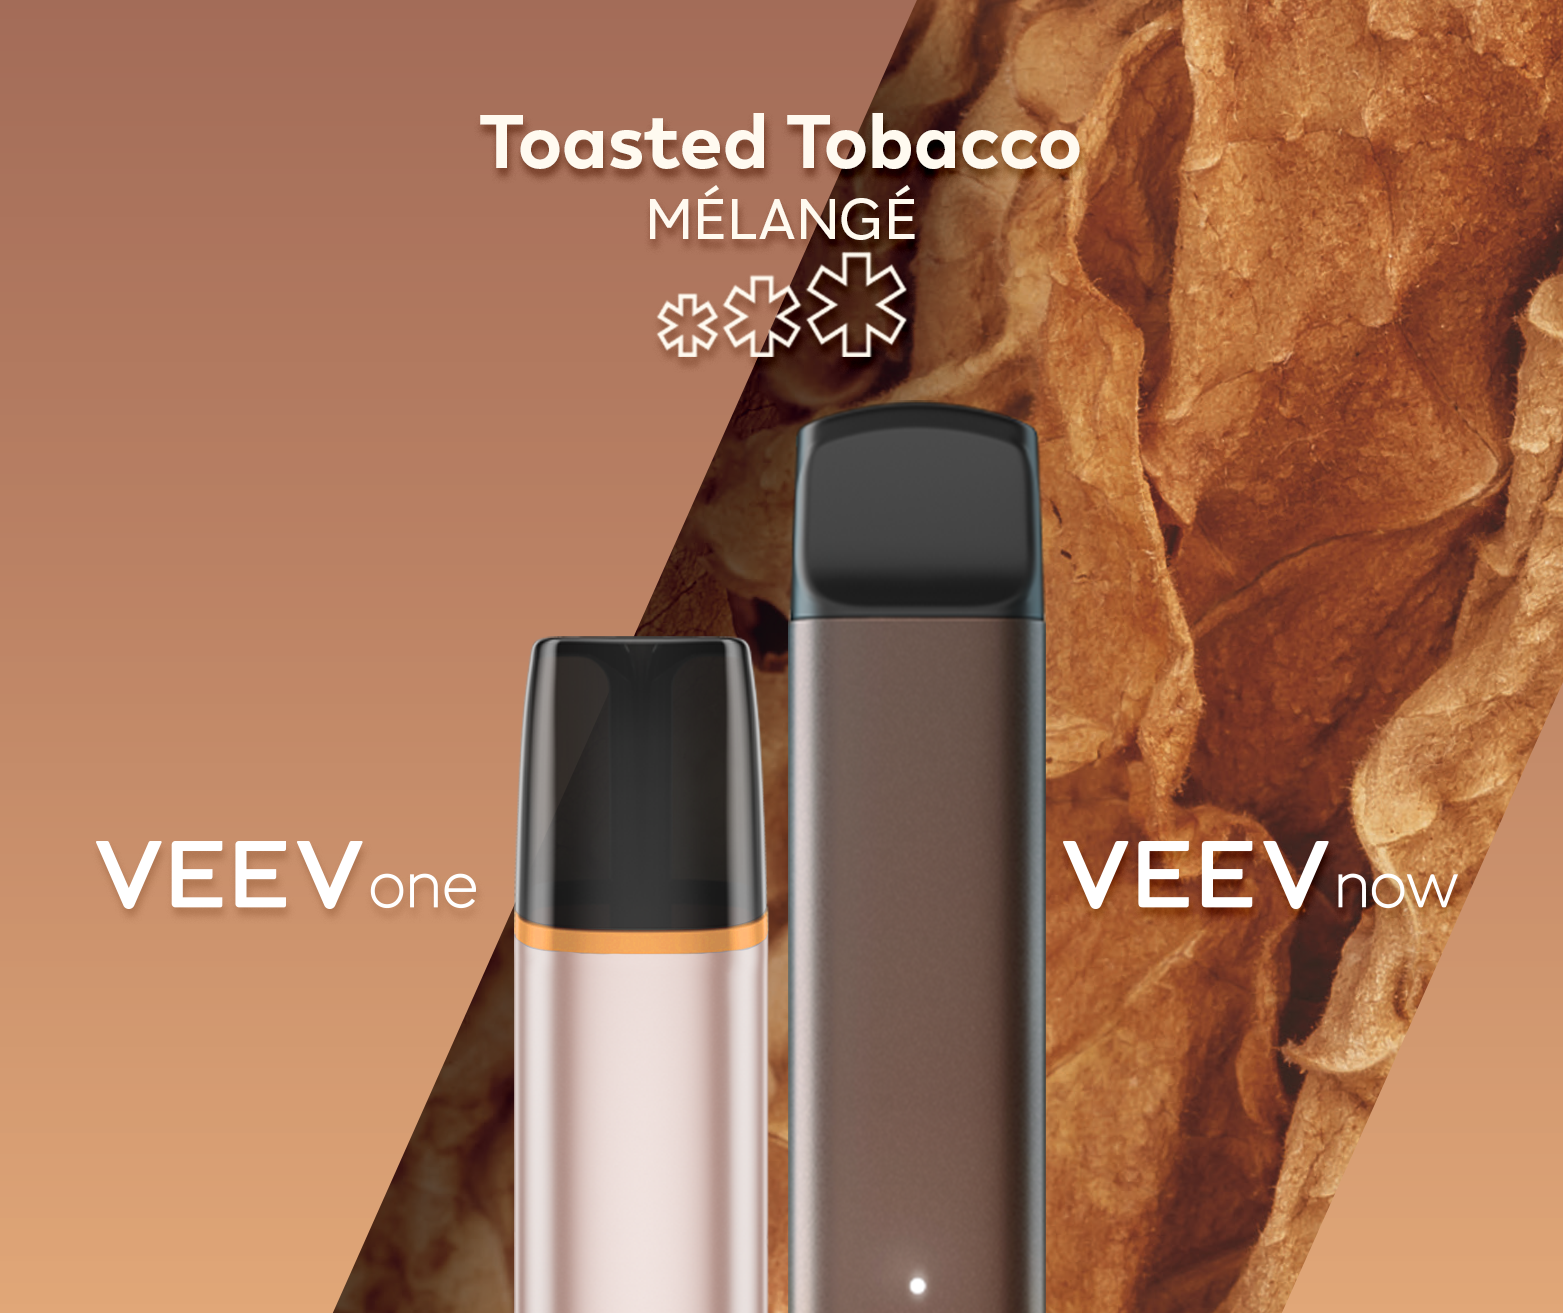 Un appareil à capsule VEEV ONE et un appareil jetable VEEV NOW, tous deux en saveur Toasted Tobacco.